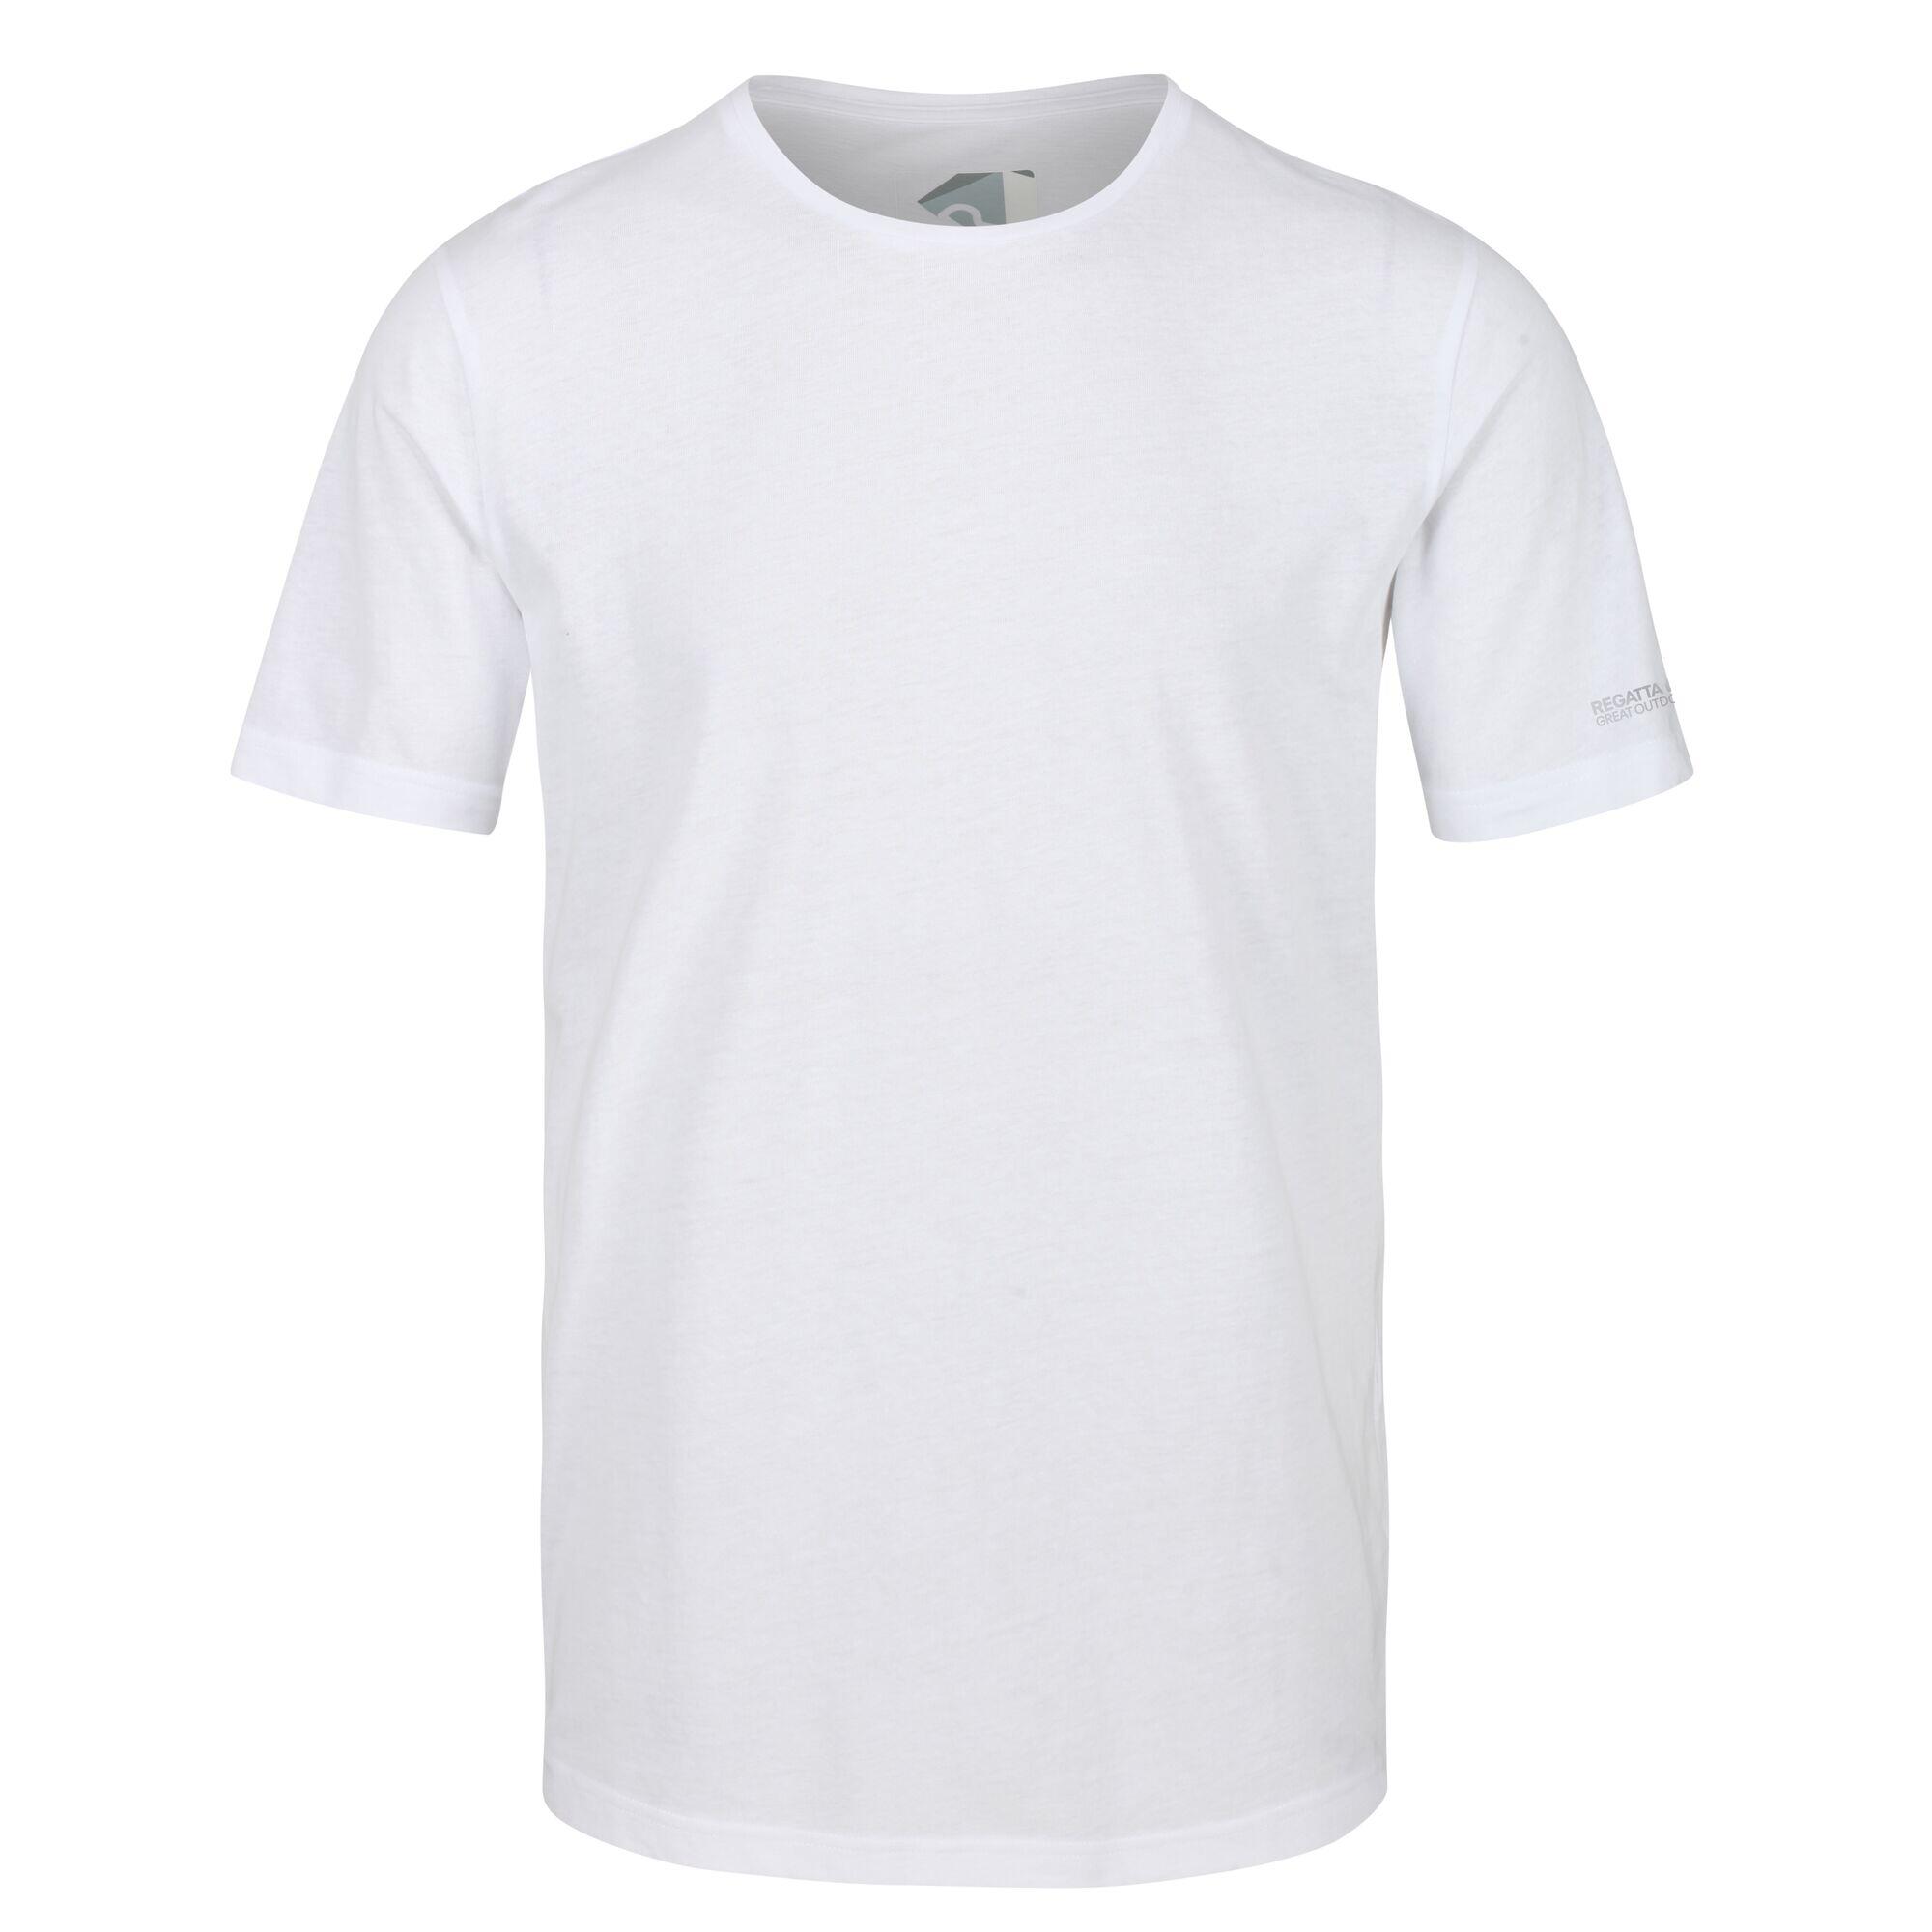 Tait Men's Walking Short Sleeve T-Shirt - White 5/5